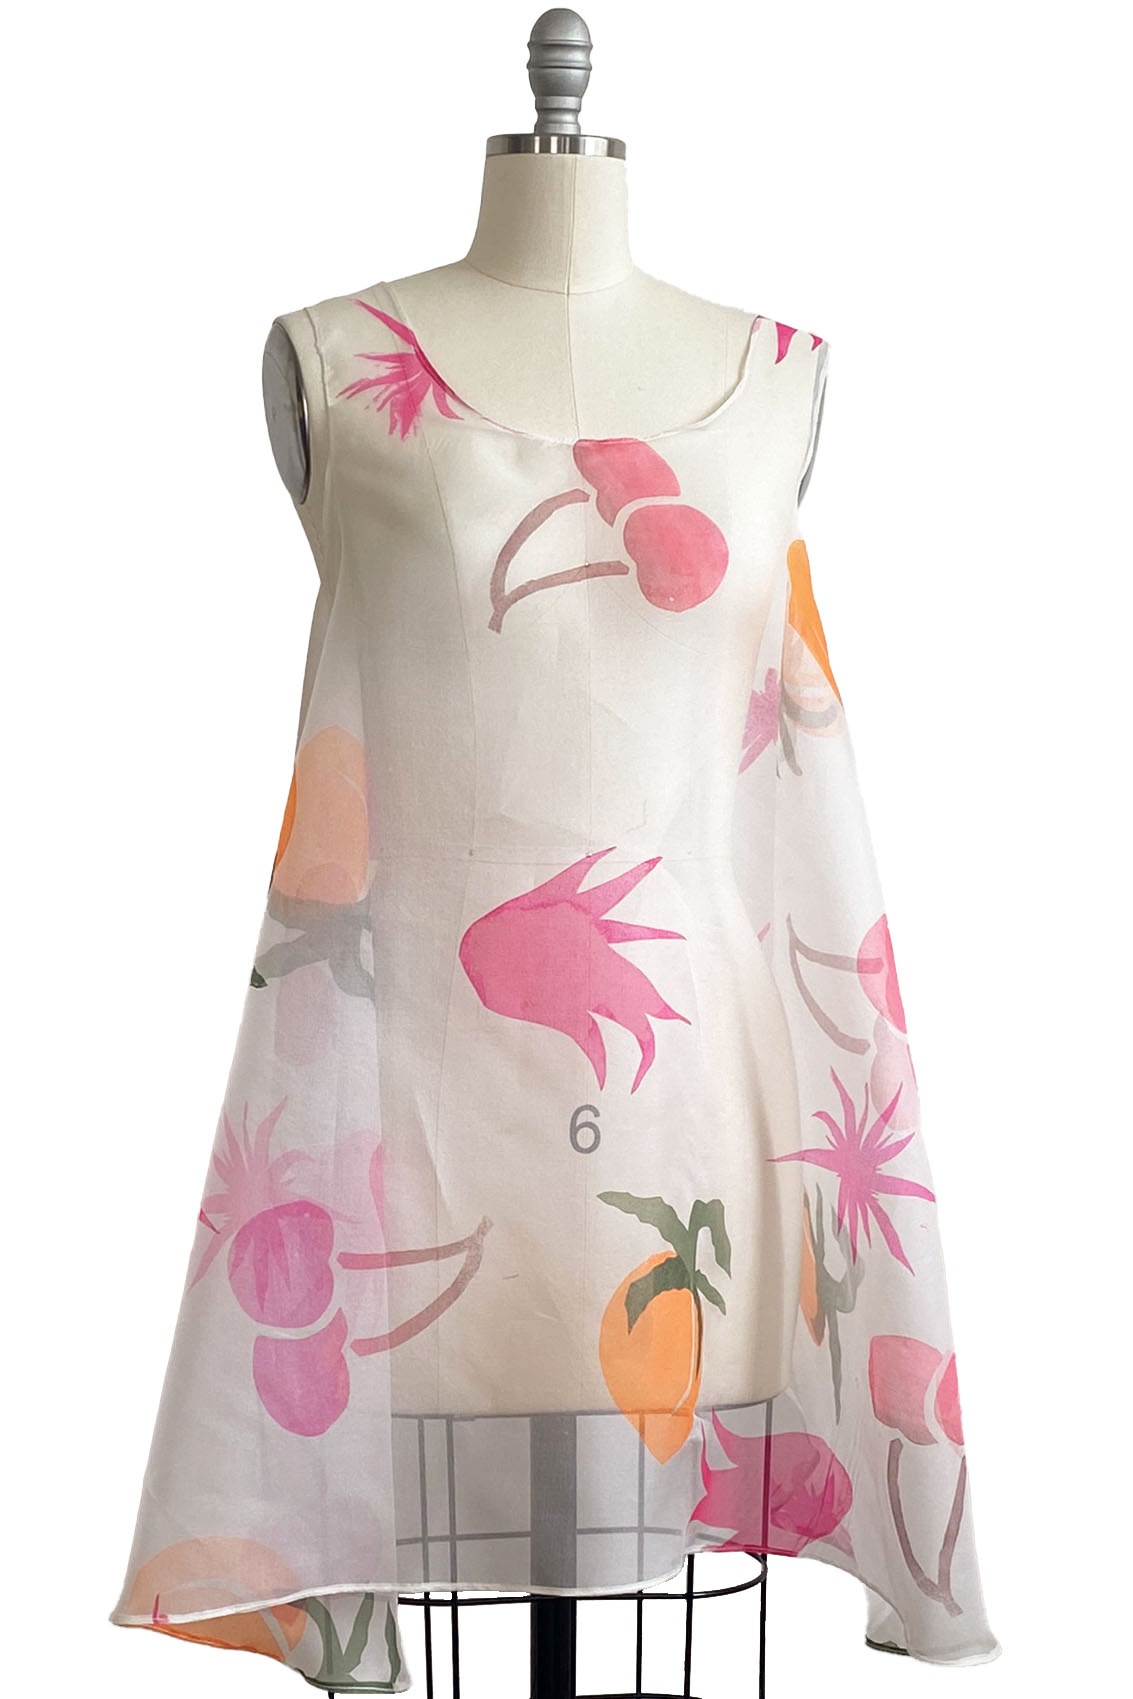 Apron Dress in Organza w/ Papercut Fruit Print - White, Pink & Orange